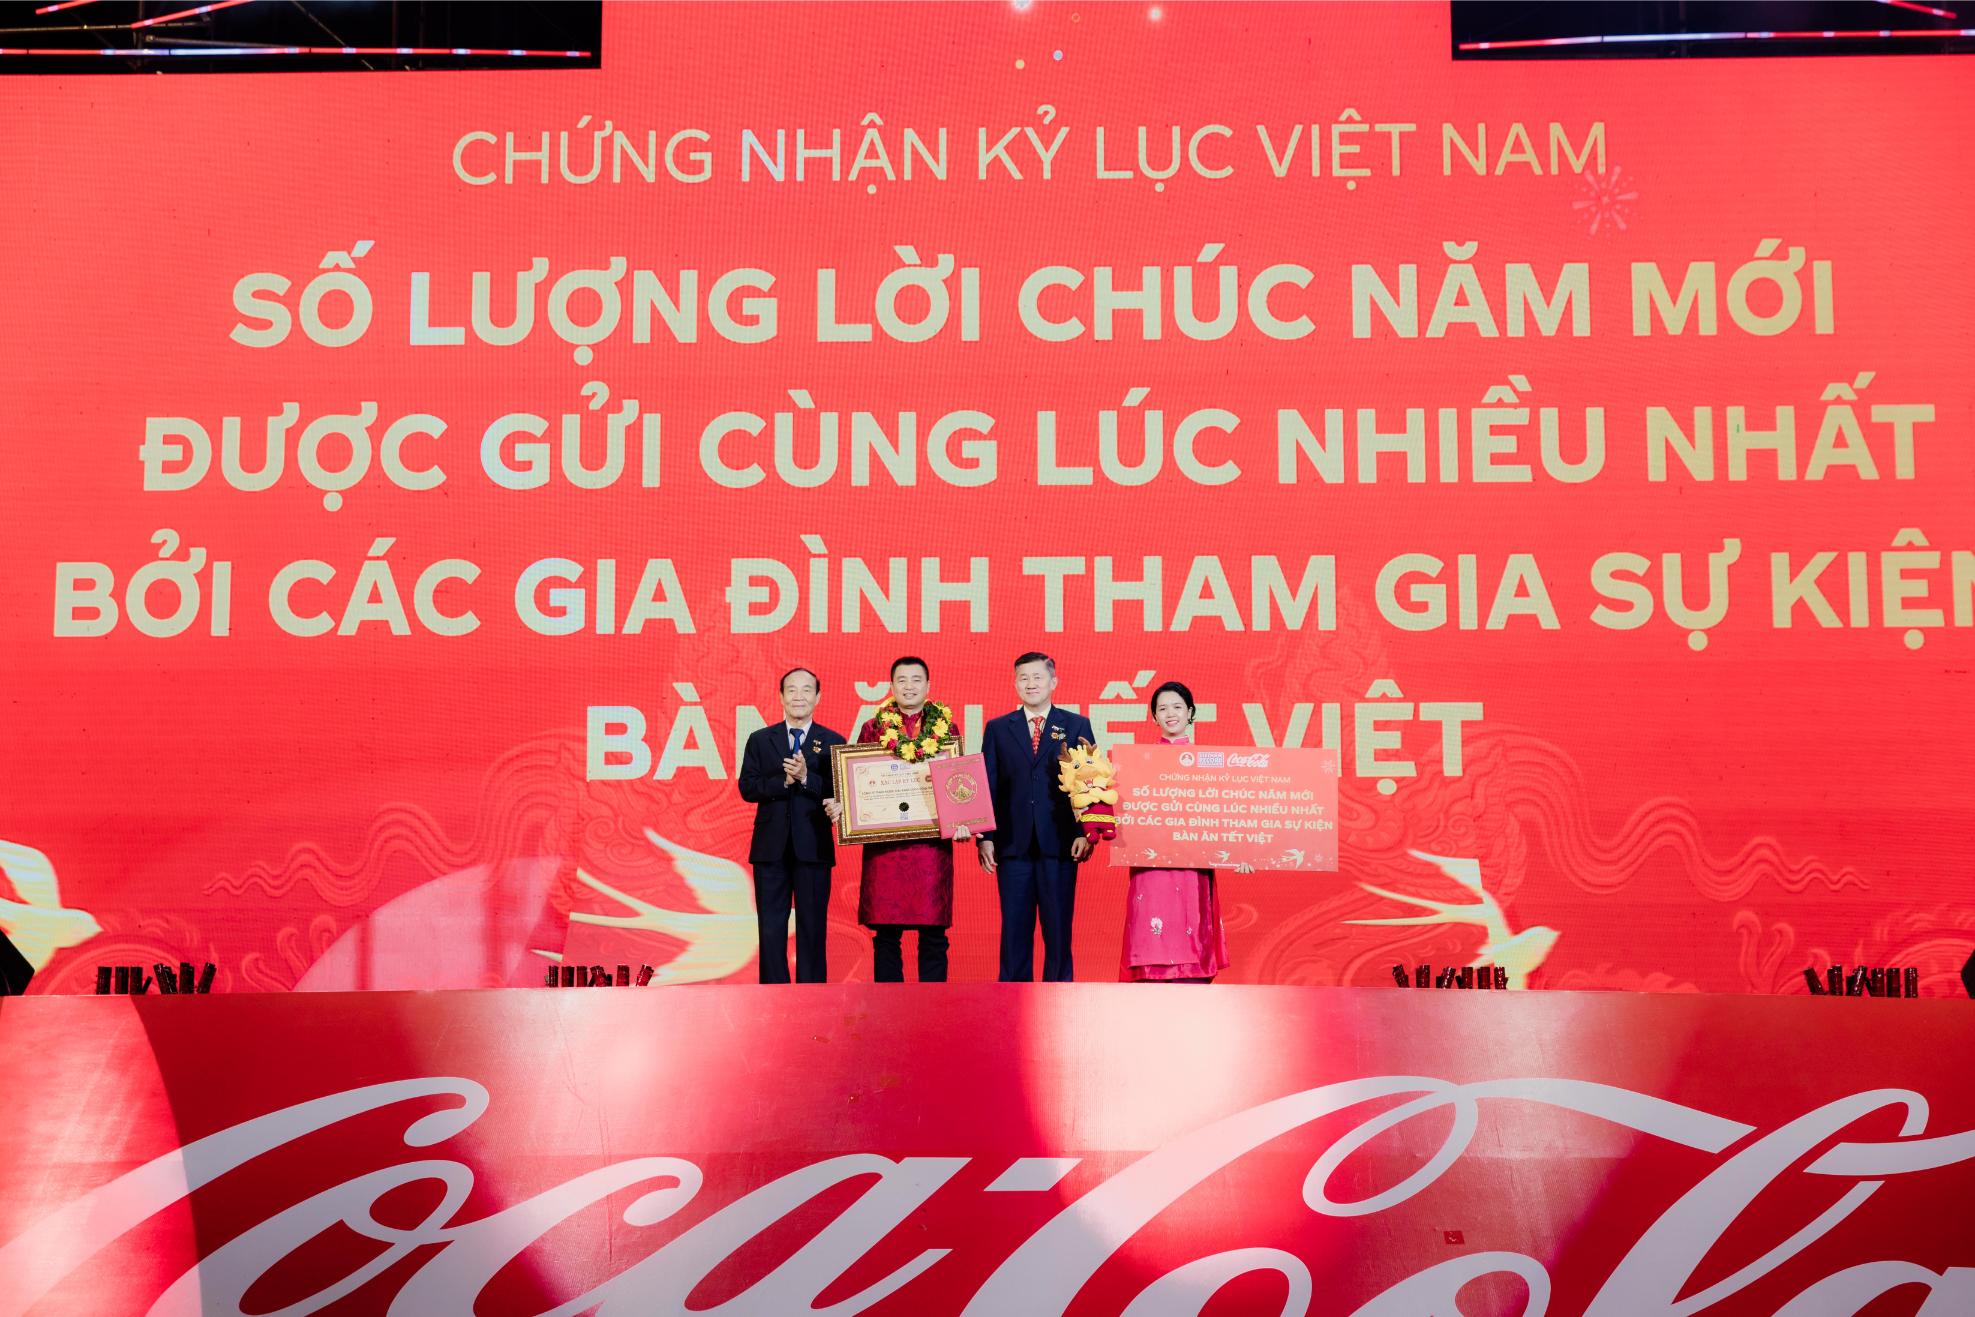 coca cola 1 Coca Cola sum họp 1,000 gia đình Việt thưởng thức Bàn Tiệc Tết Diệu Kỳ